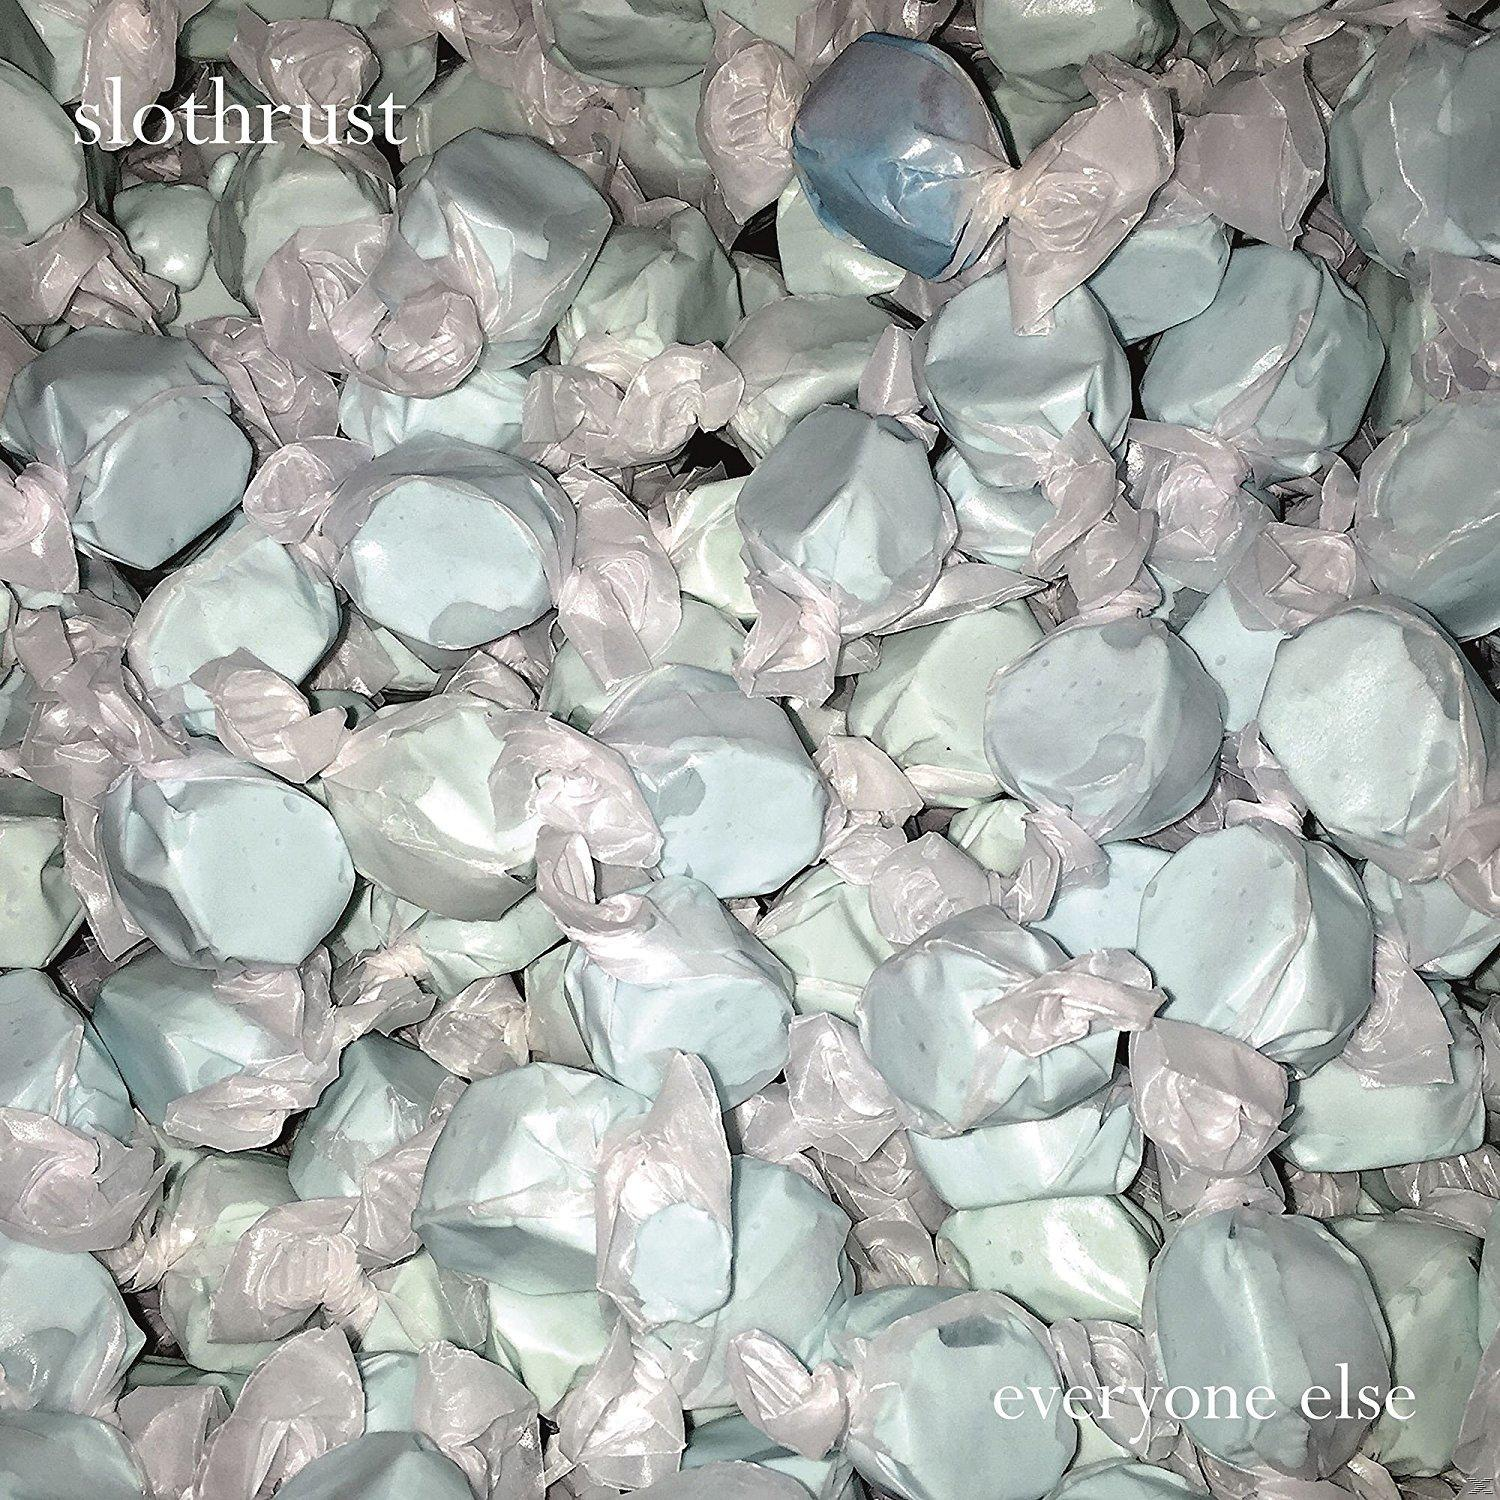 Slothrust - (Vinyl) Everyone - Else